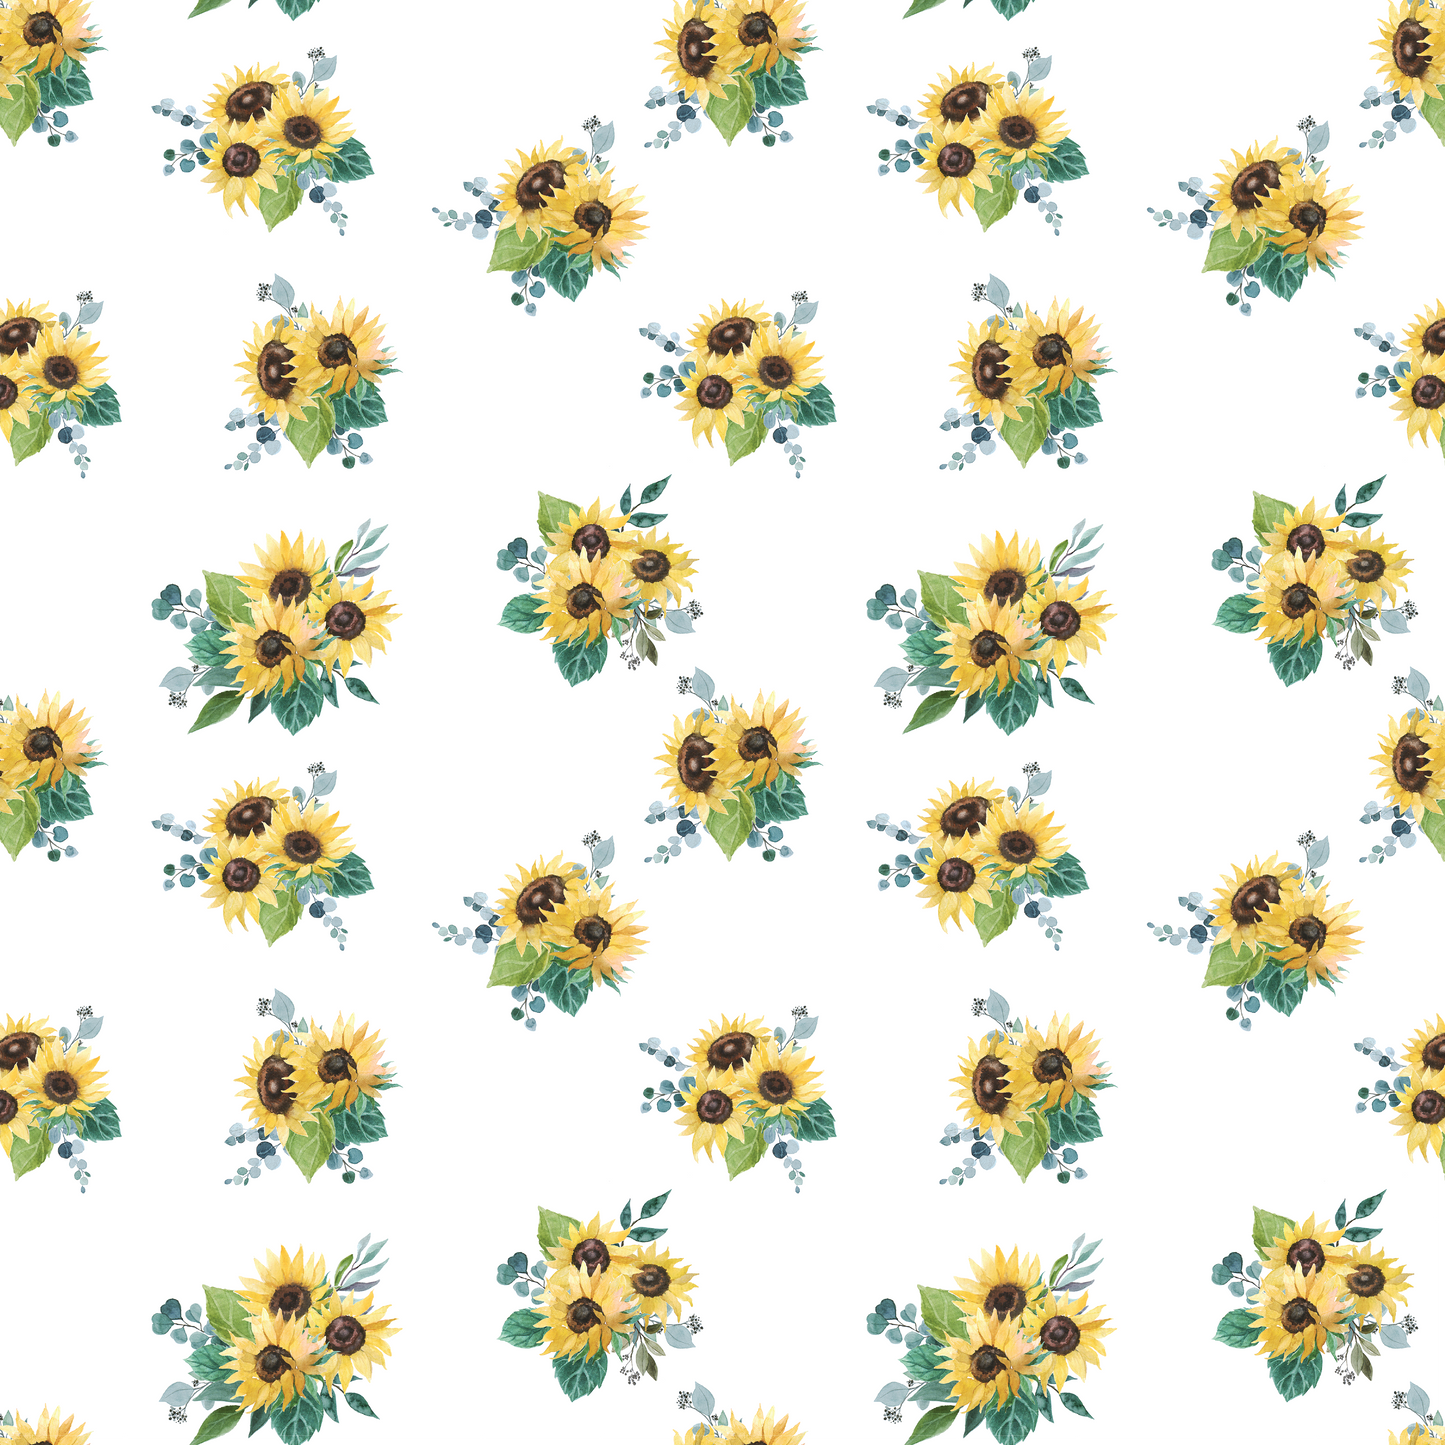 Sunflowers - Sunflowers 001